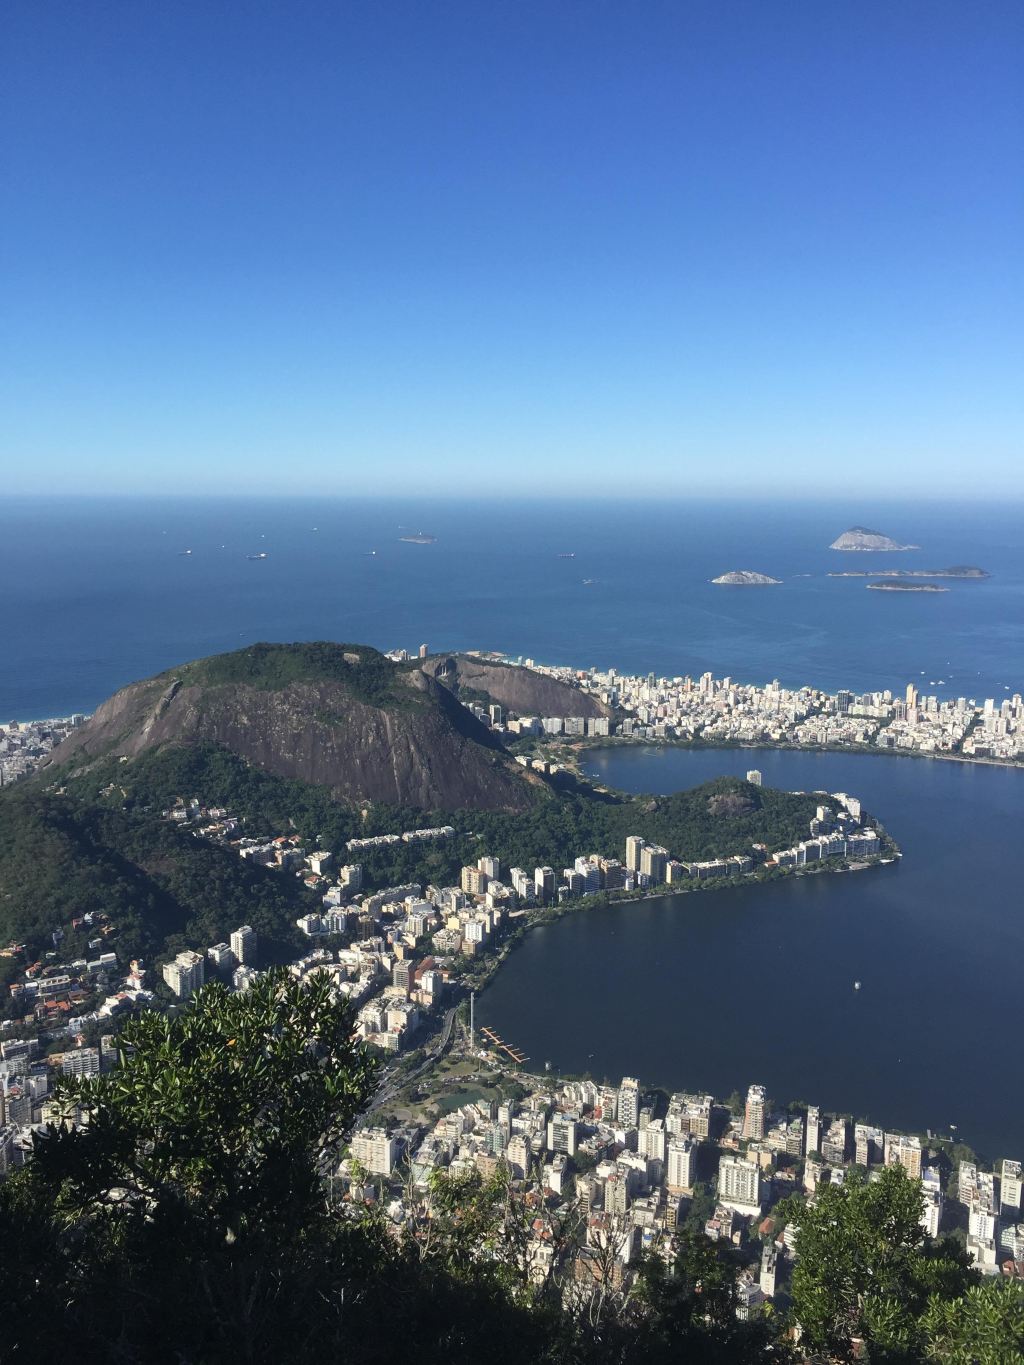 自驾游世界之南美巴西奥运期间圣保罗-伊瓜苏大瀑布-里约热内卢自驾游